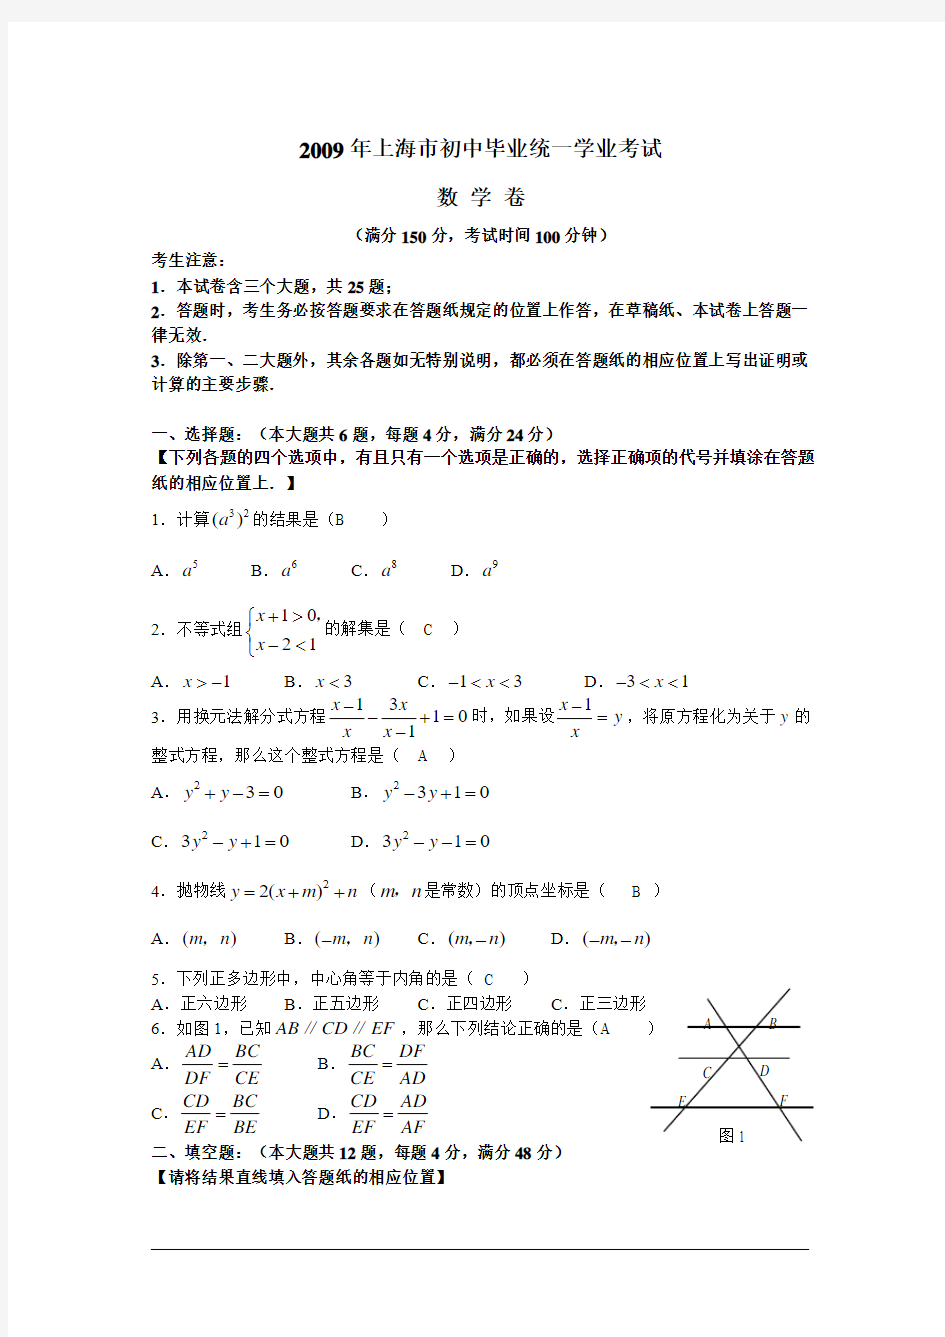 2009年上海市初中毕业生数学统一学业考试及答案